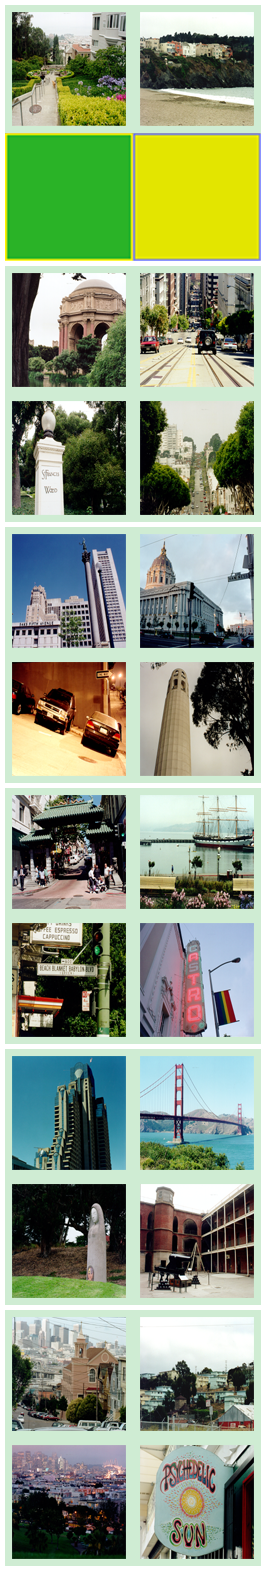 Monopoly (1999) - Photos (San Francisco)